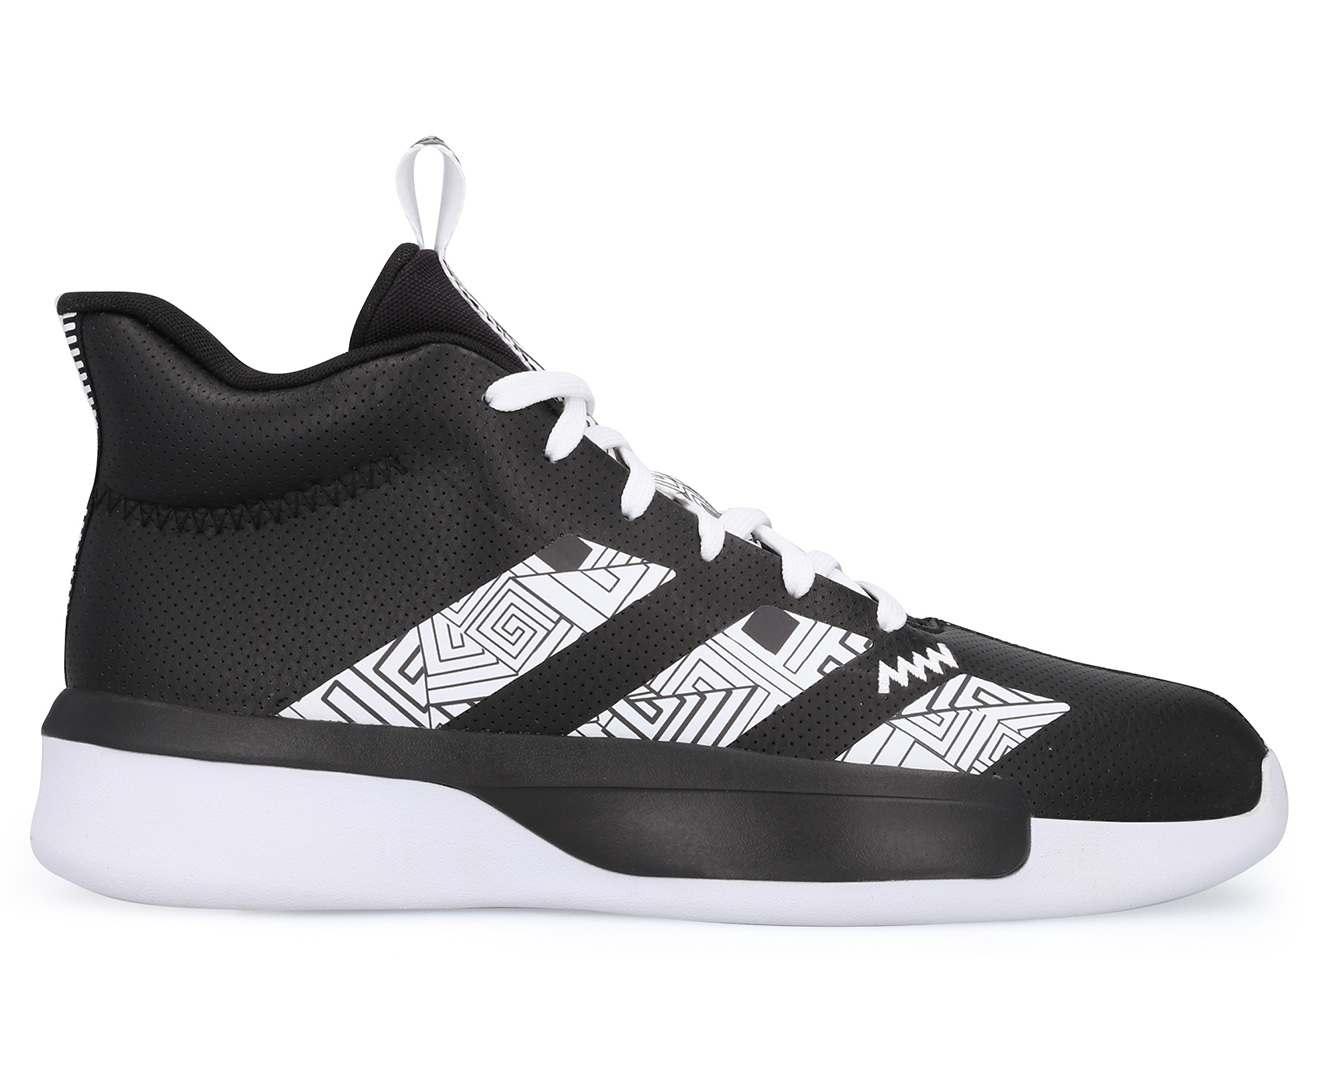 Adidas Men's Pro Next 2019 Basketball Shoes - Core Black/Footwear White | Catch.com.au